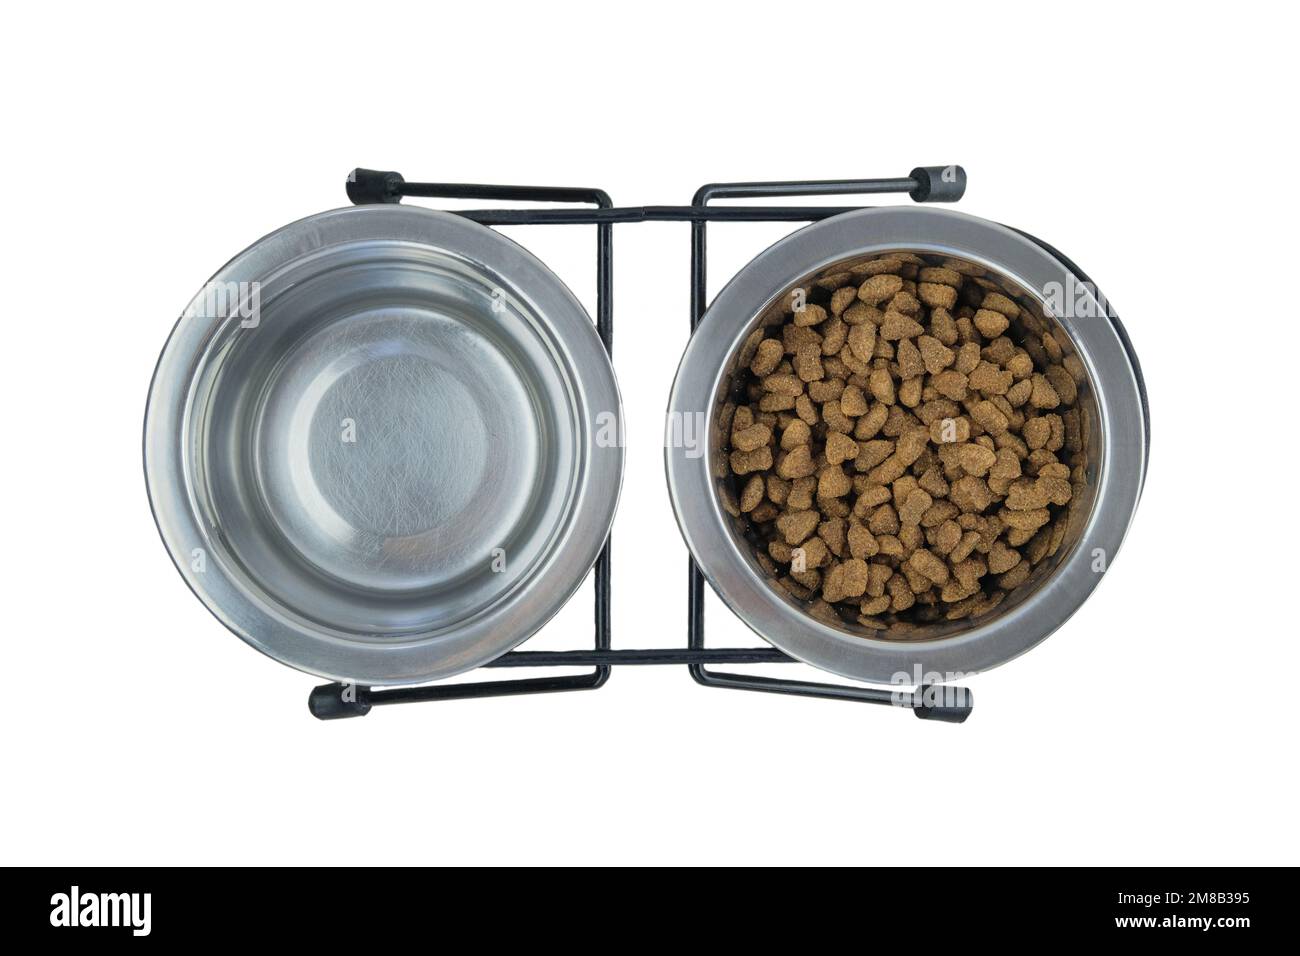 Nourriture sèche et eau pour chat ou chien dans des bols métalliques isolés sur un fond blanc. Nourriture pour chats.vue du dessus. Banque D'Images